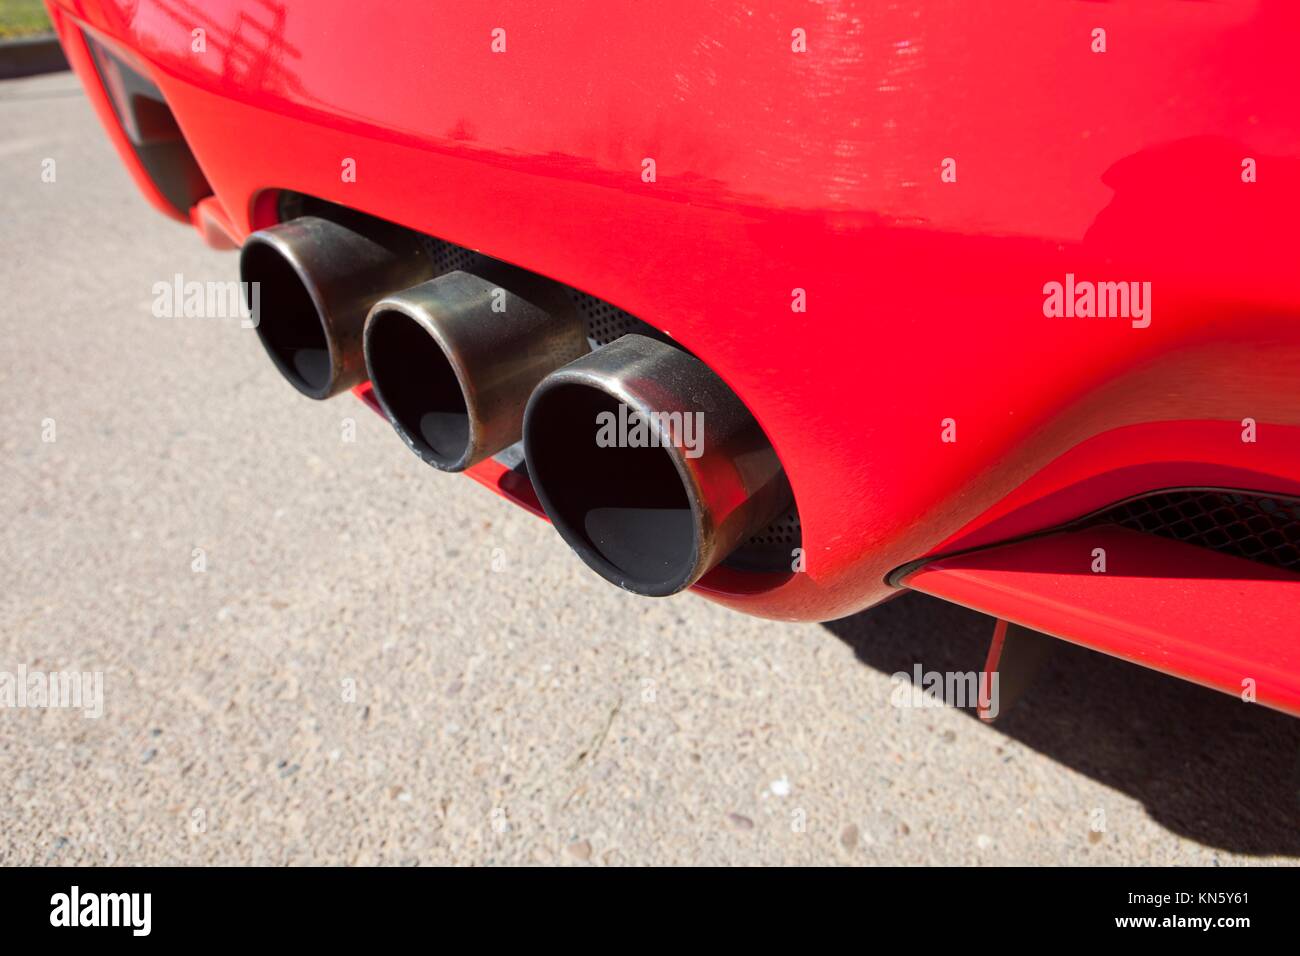 Sport Auto Auspuff mit drei verchromten Rohren Stockfotografie - Alamy